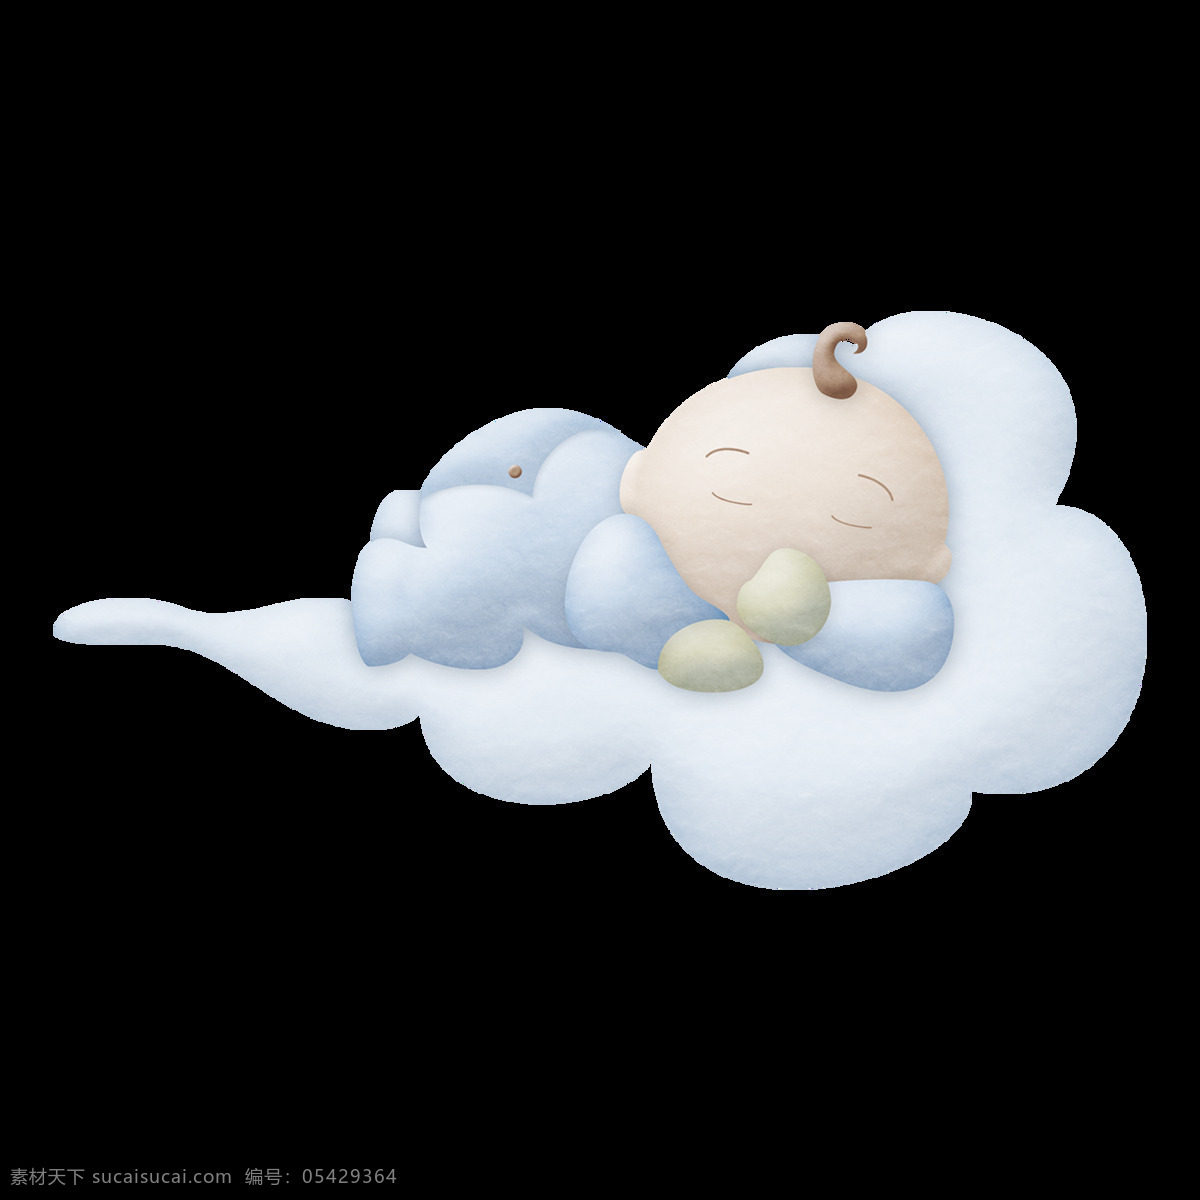 小宝宝 睡着 云朵 上 元素 白色云朵 睡觉 安睡 漂浮